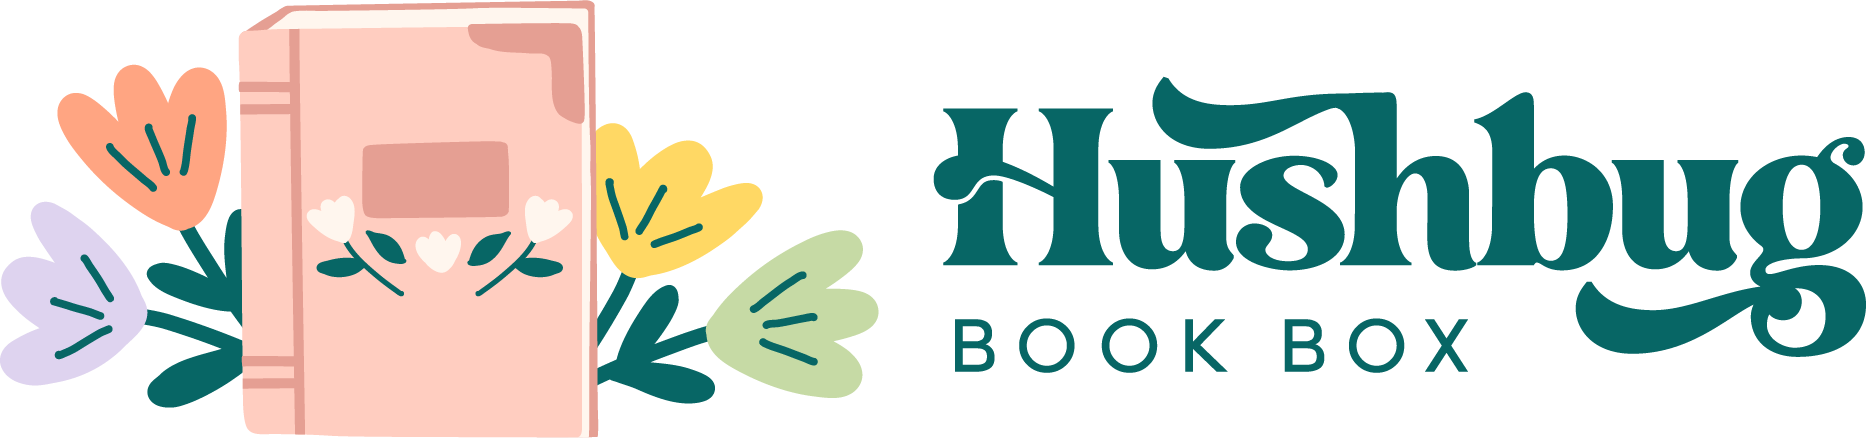 Hushbug Book Box